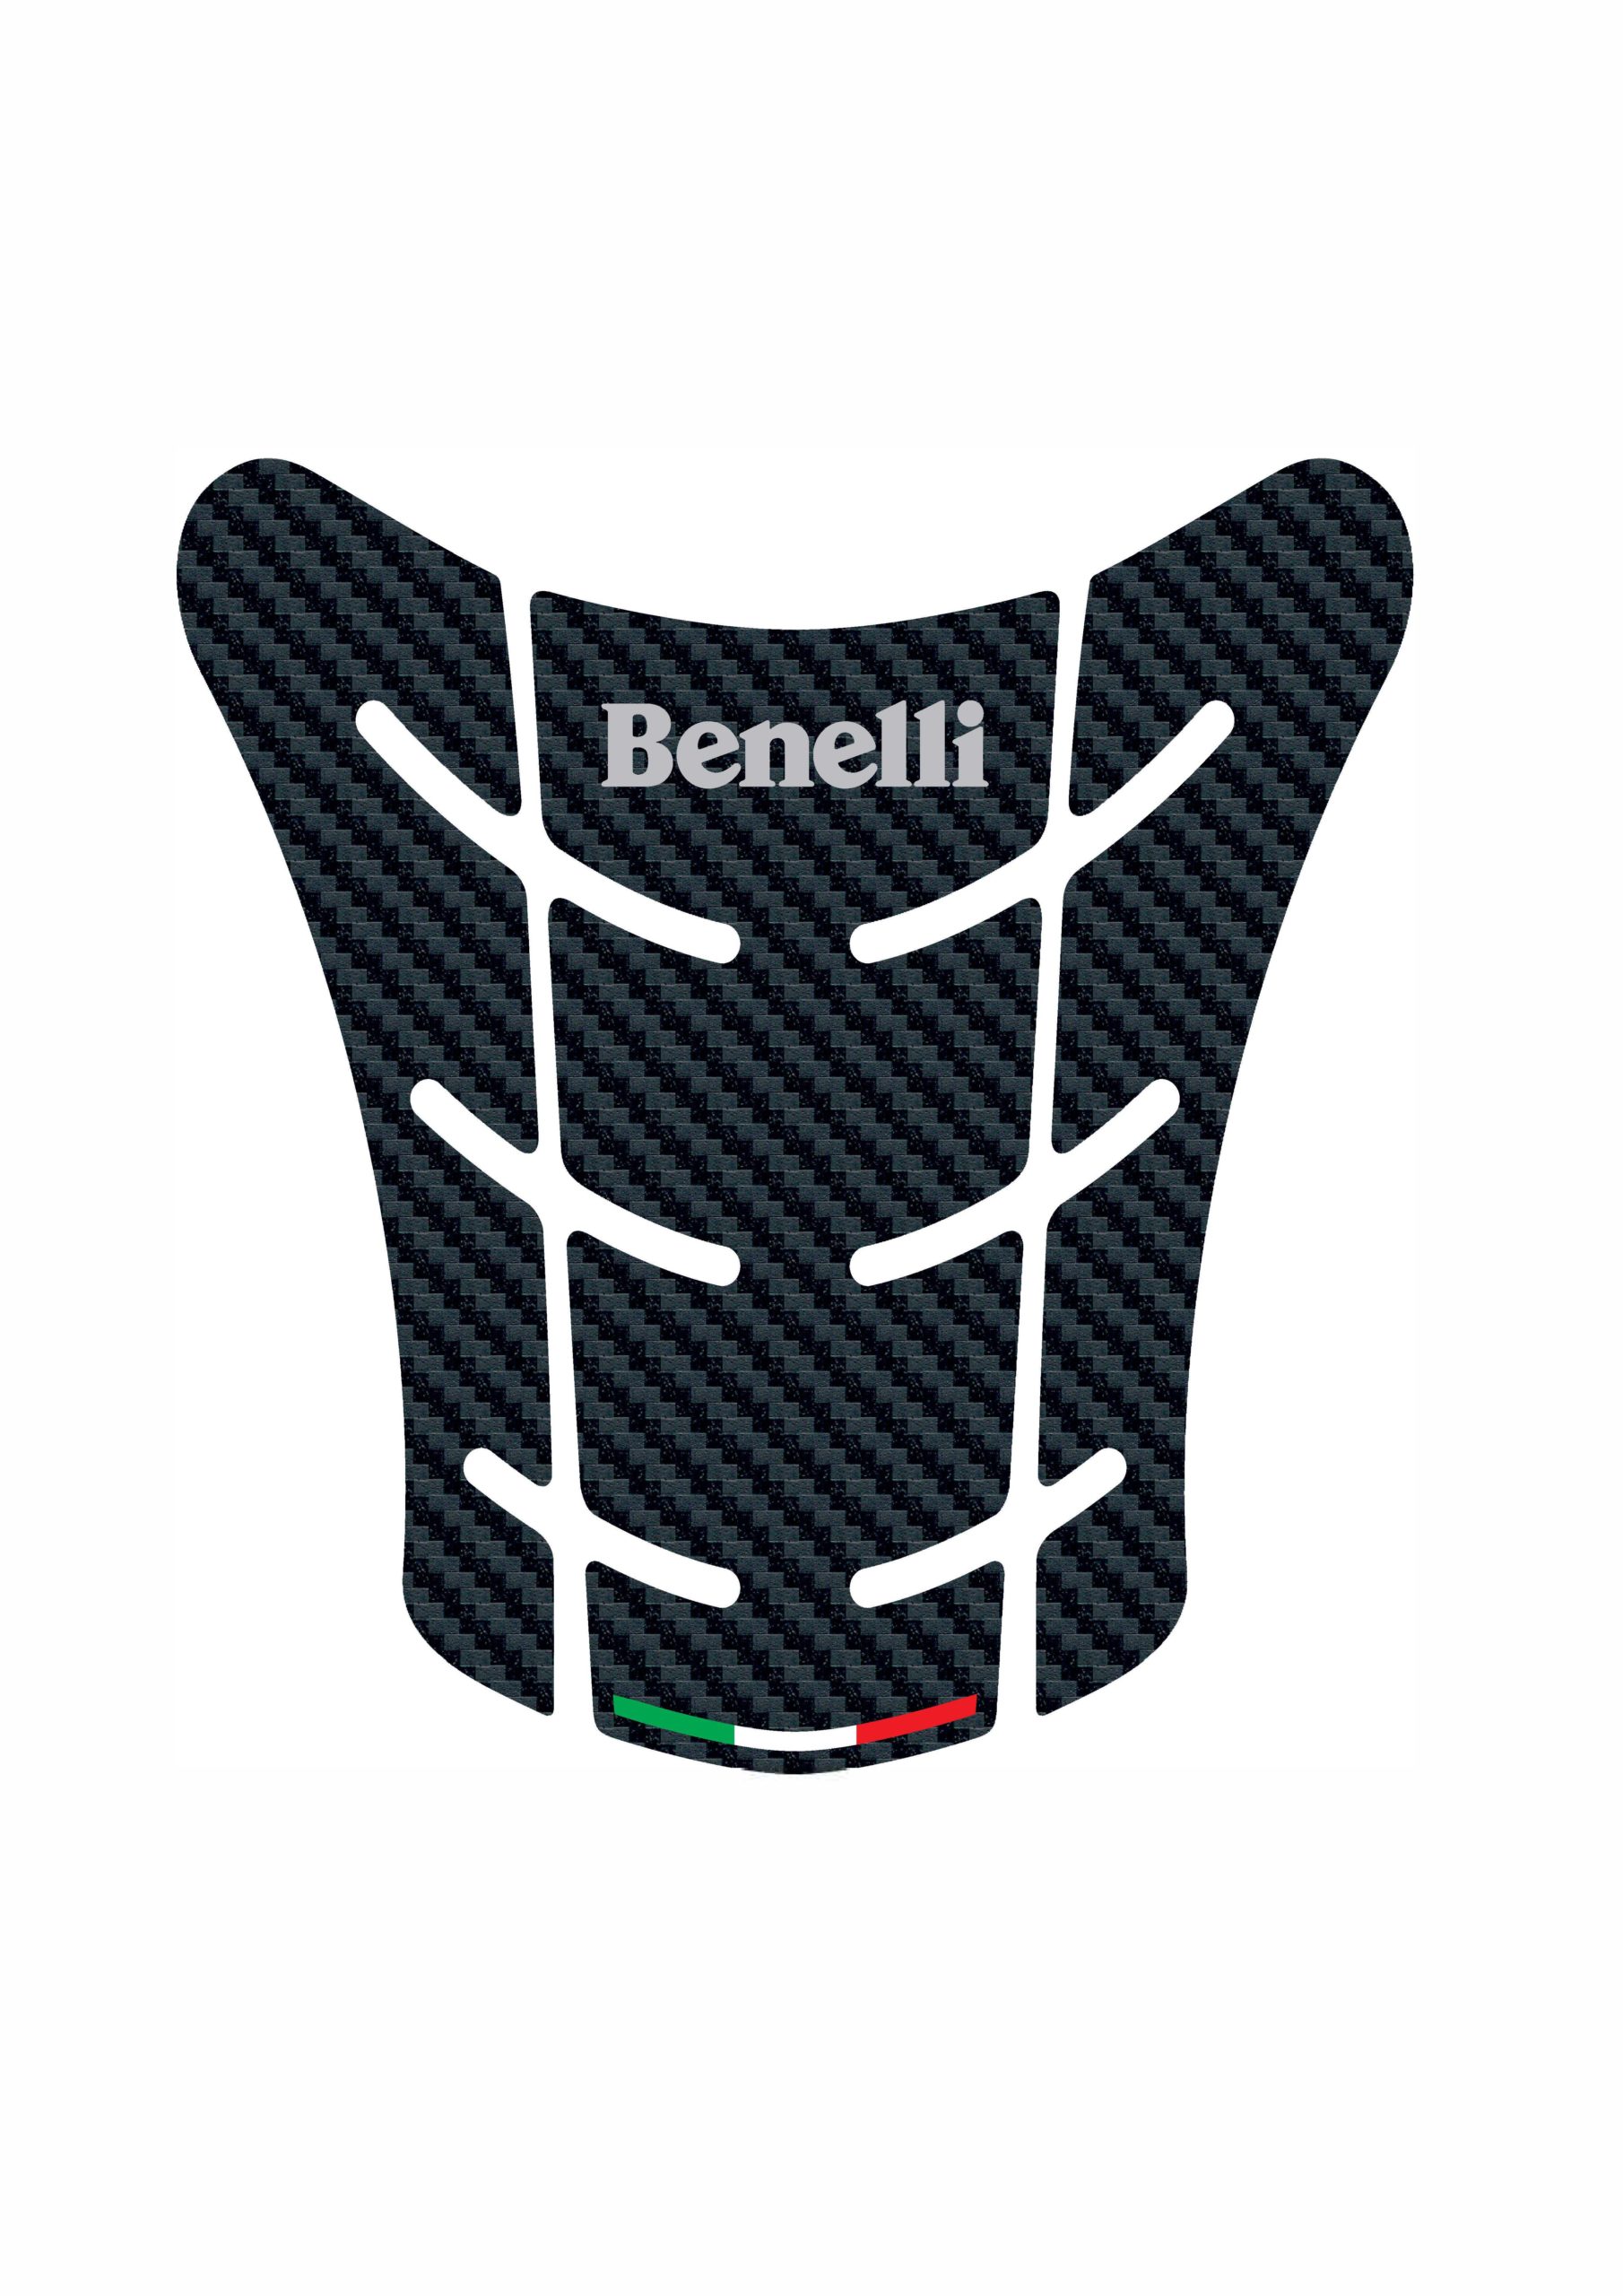 Protection Du Réservoir Résine Gel 3D Compatible Pour Moto 302 S Benelli 302s 